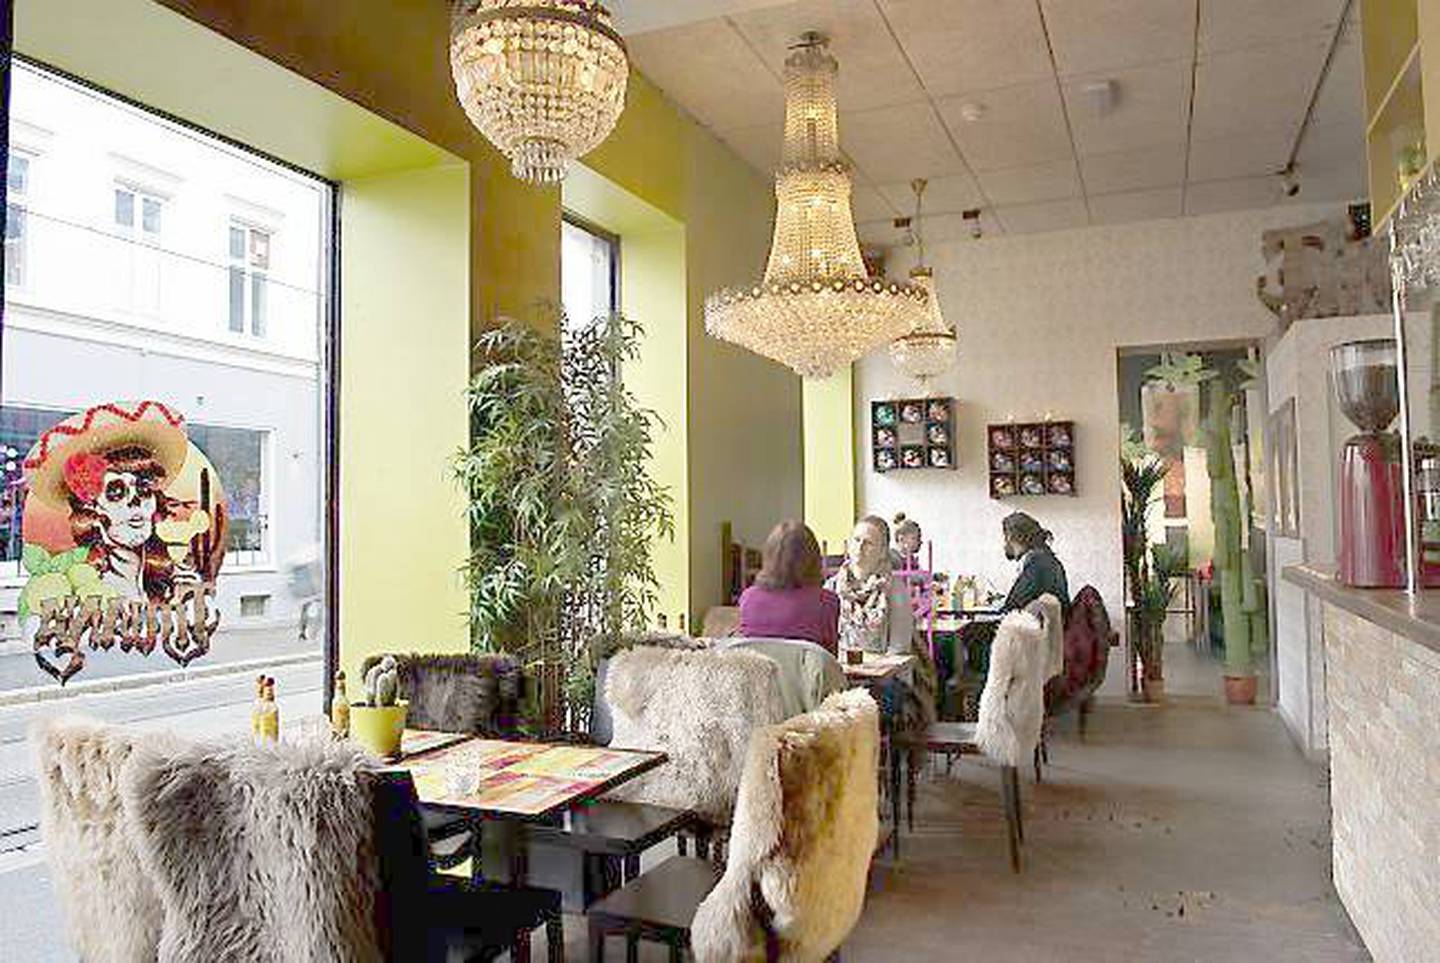 Tijuana i Thorvald Meyers gate på Grünerløkka tar antallet mexicanske restauranter i Oslo til fem. FOTO: MIMSY MØLLER